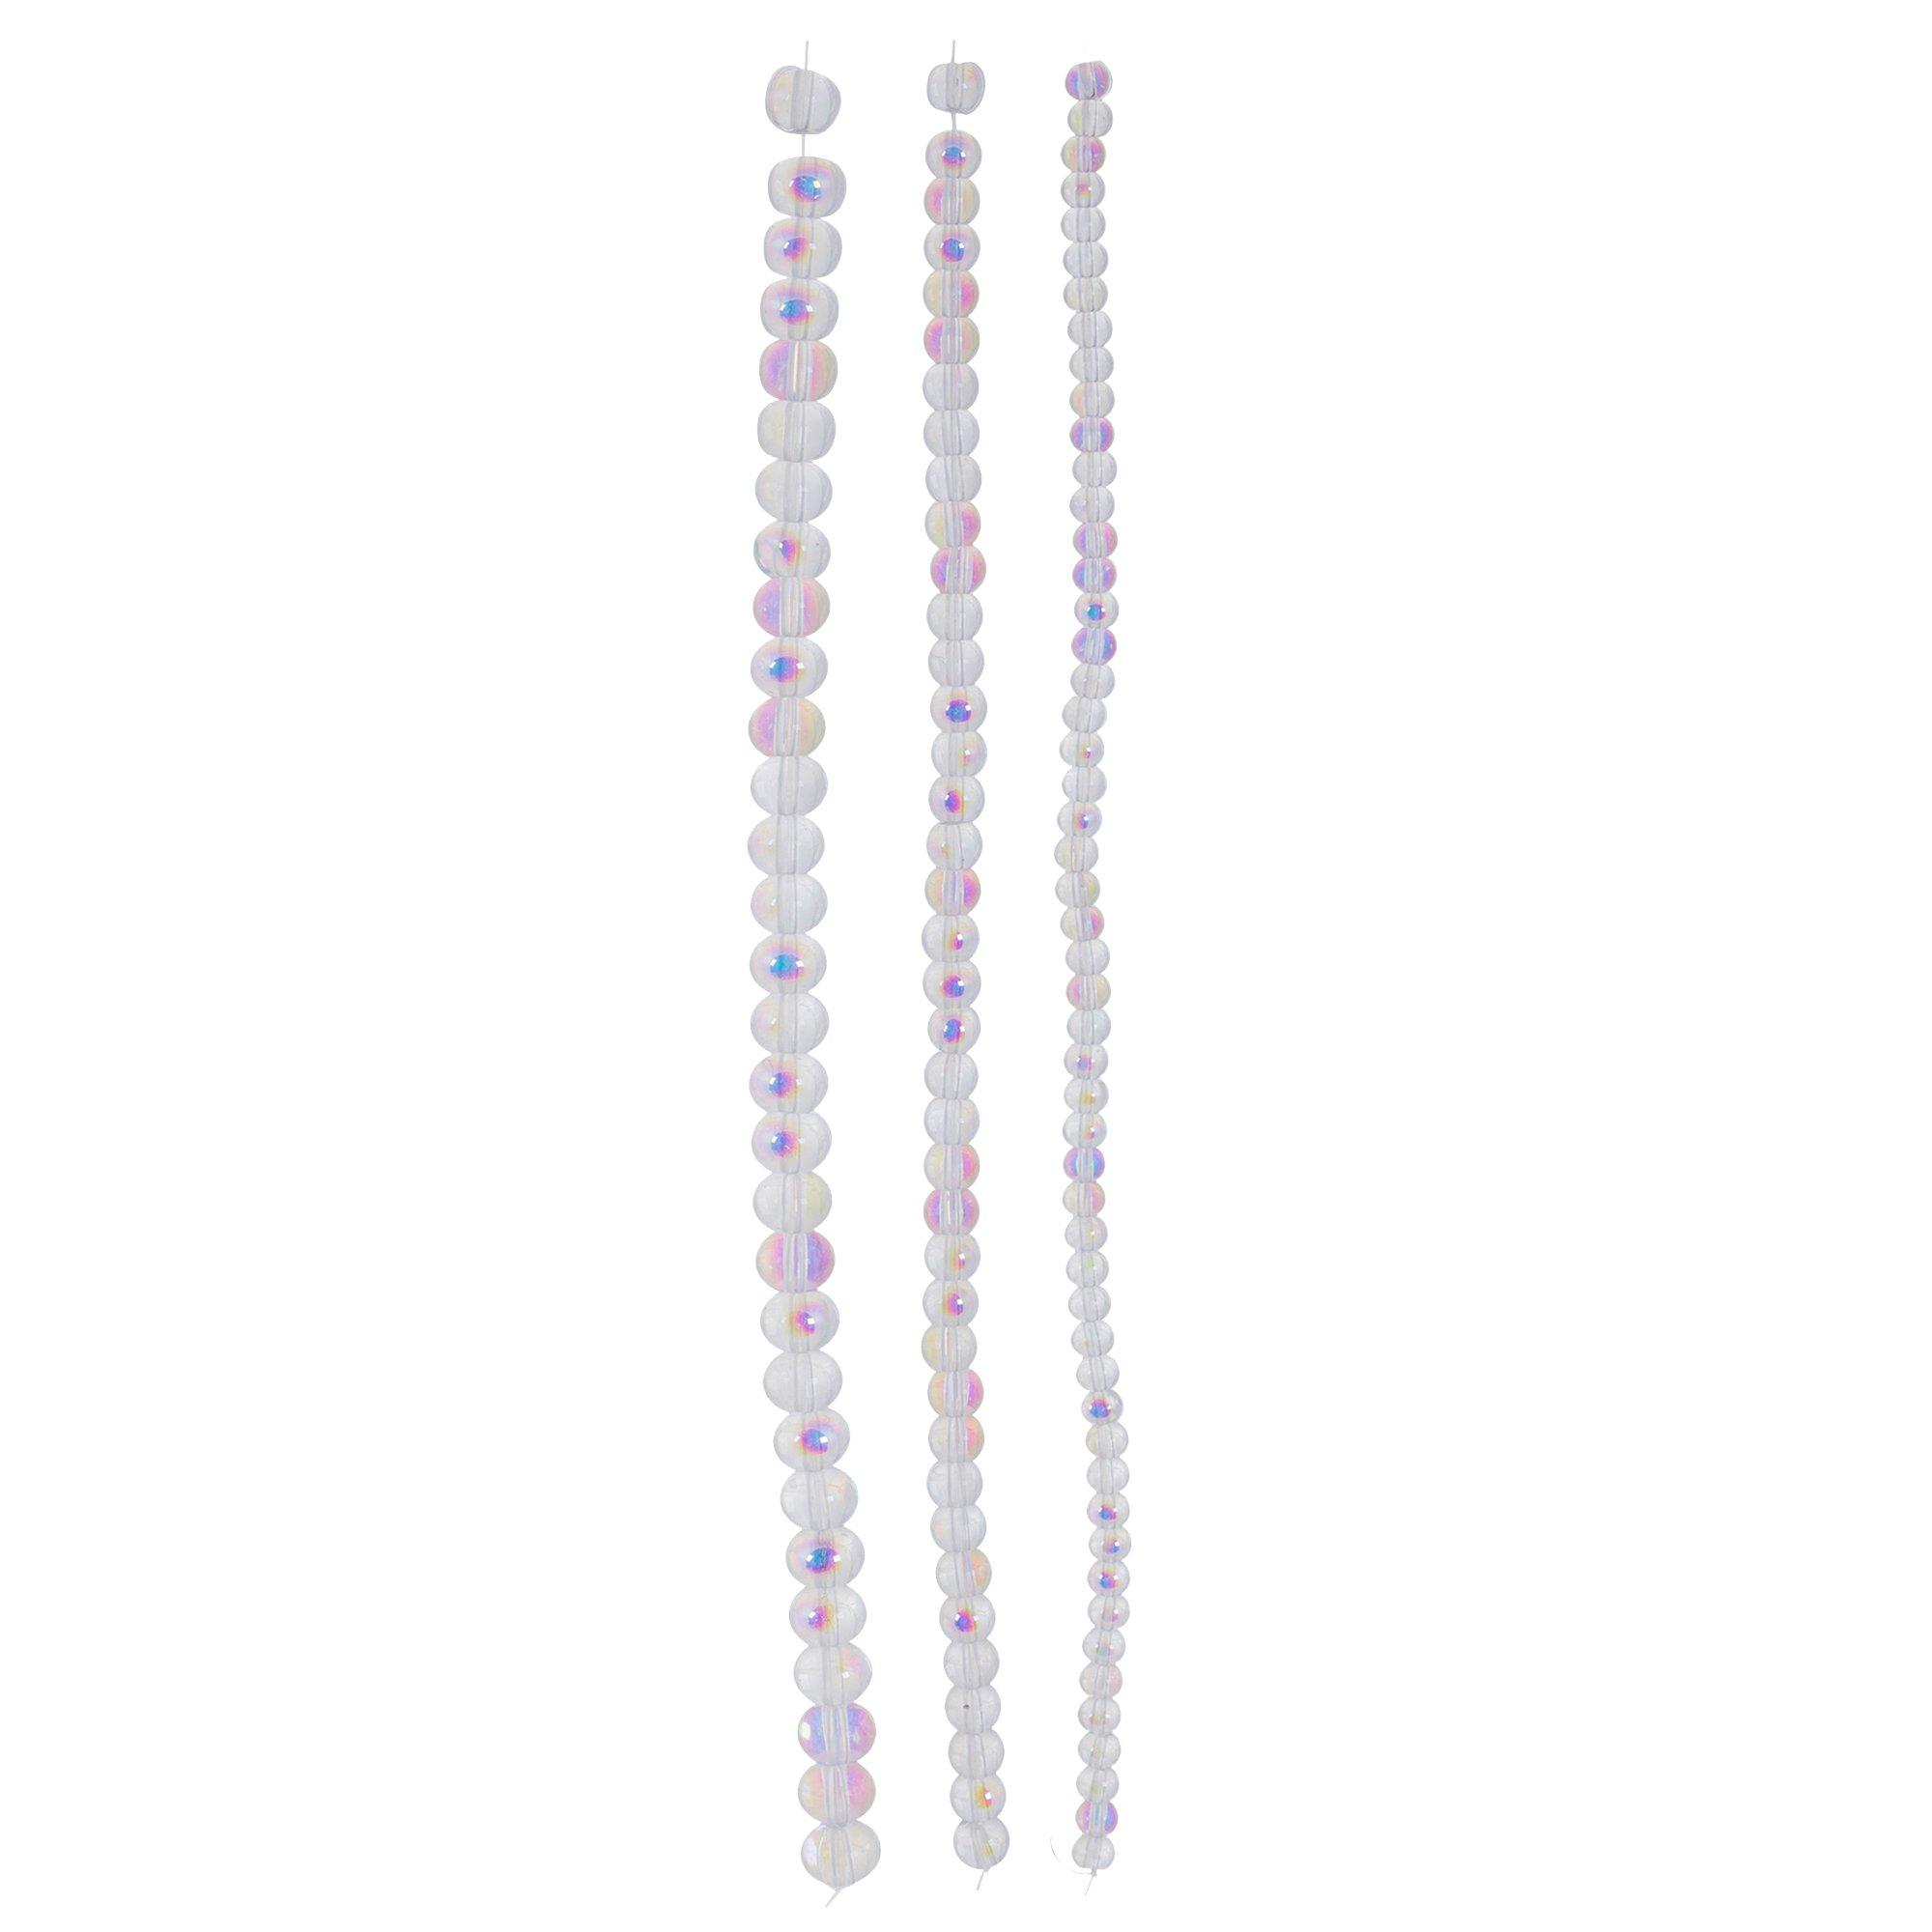 Clear Crystal Beads, Hobby Lobby, 2330025